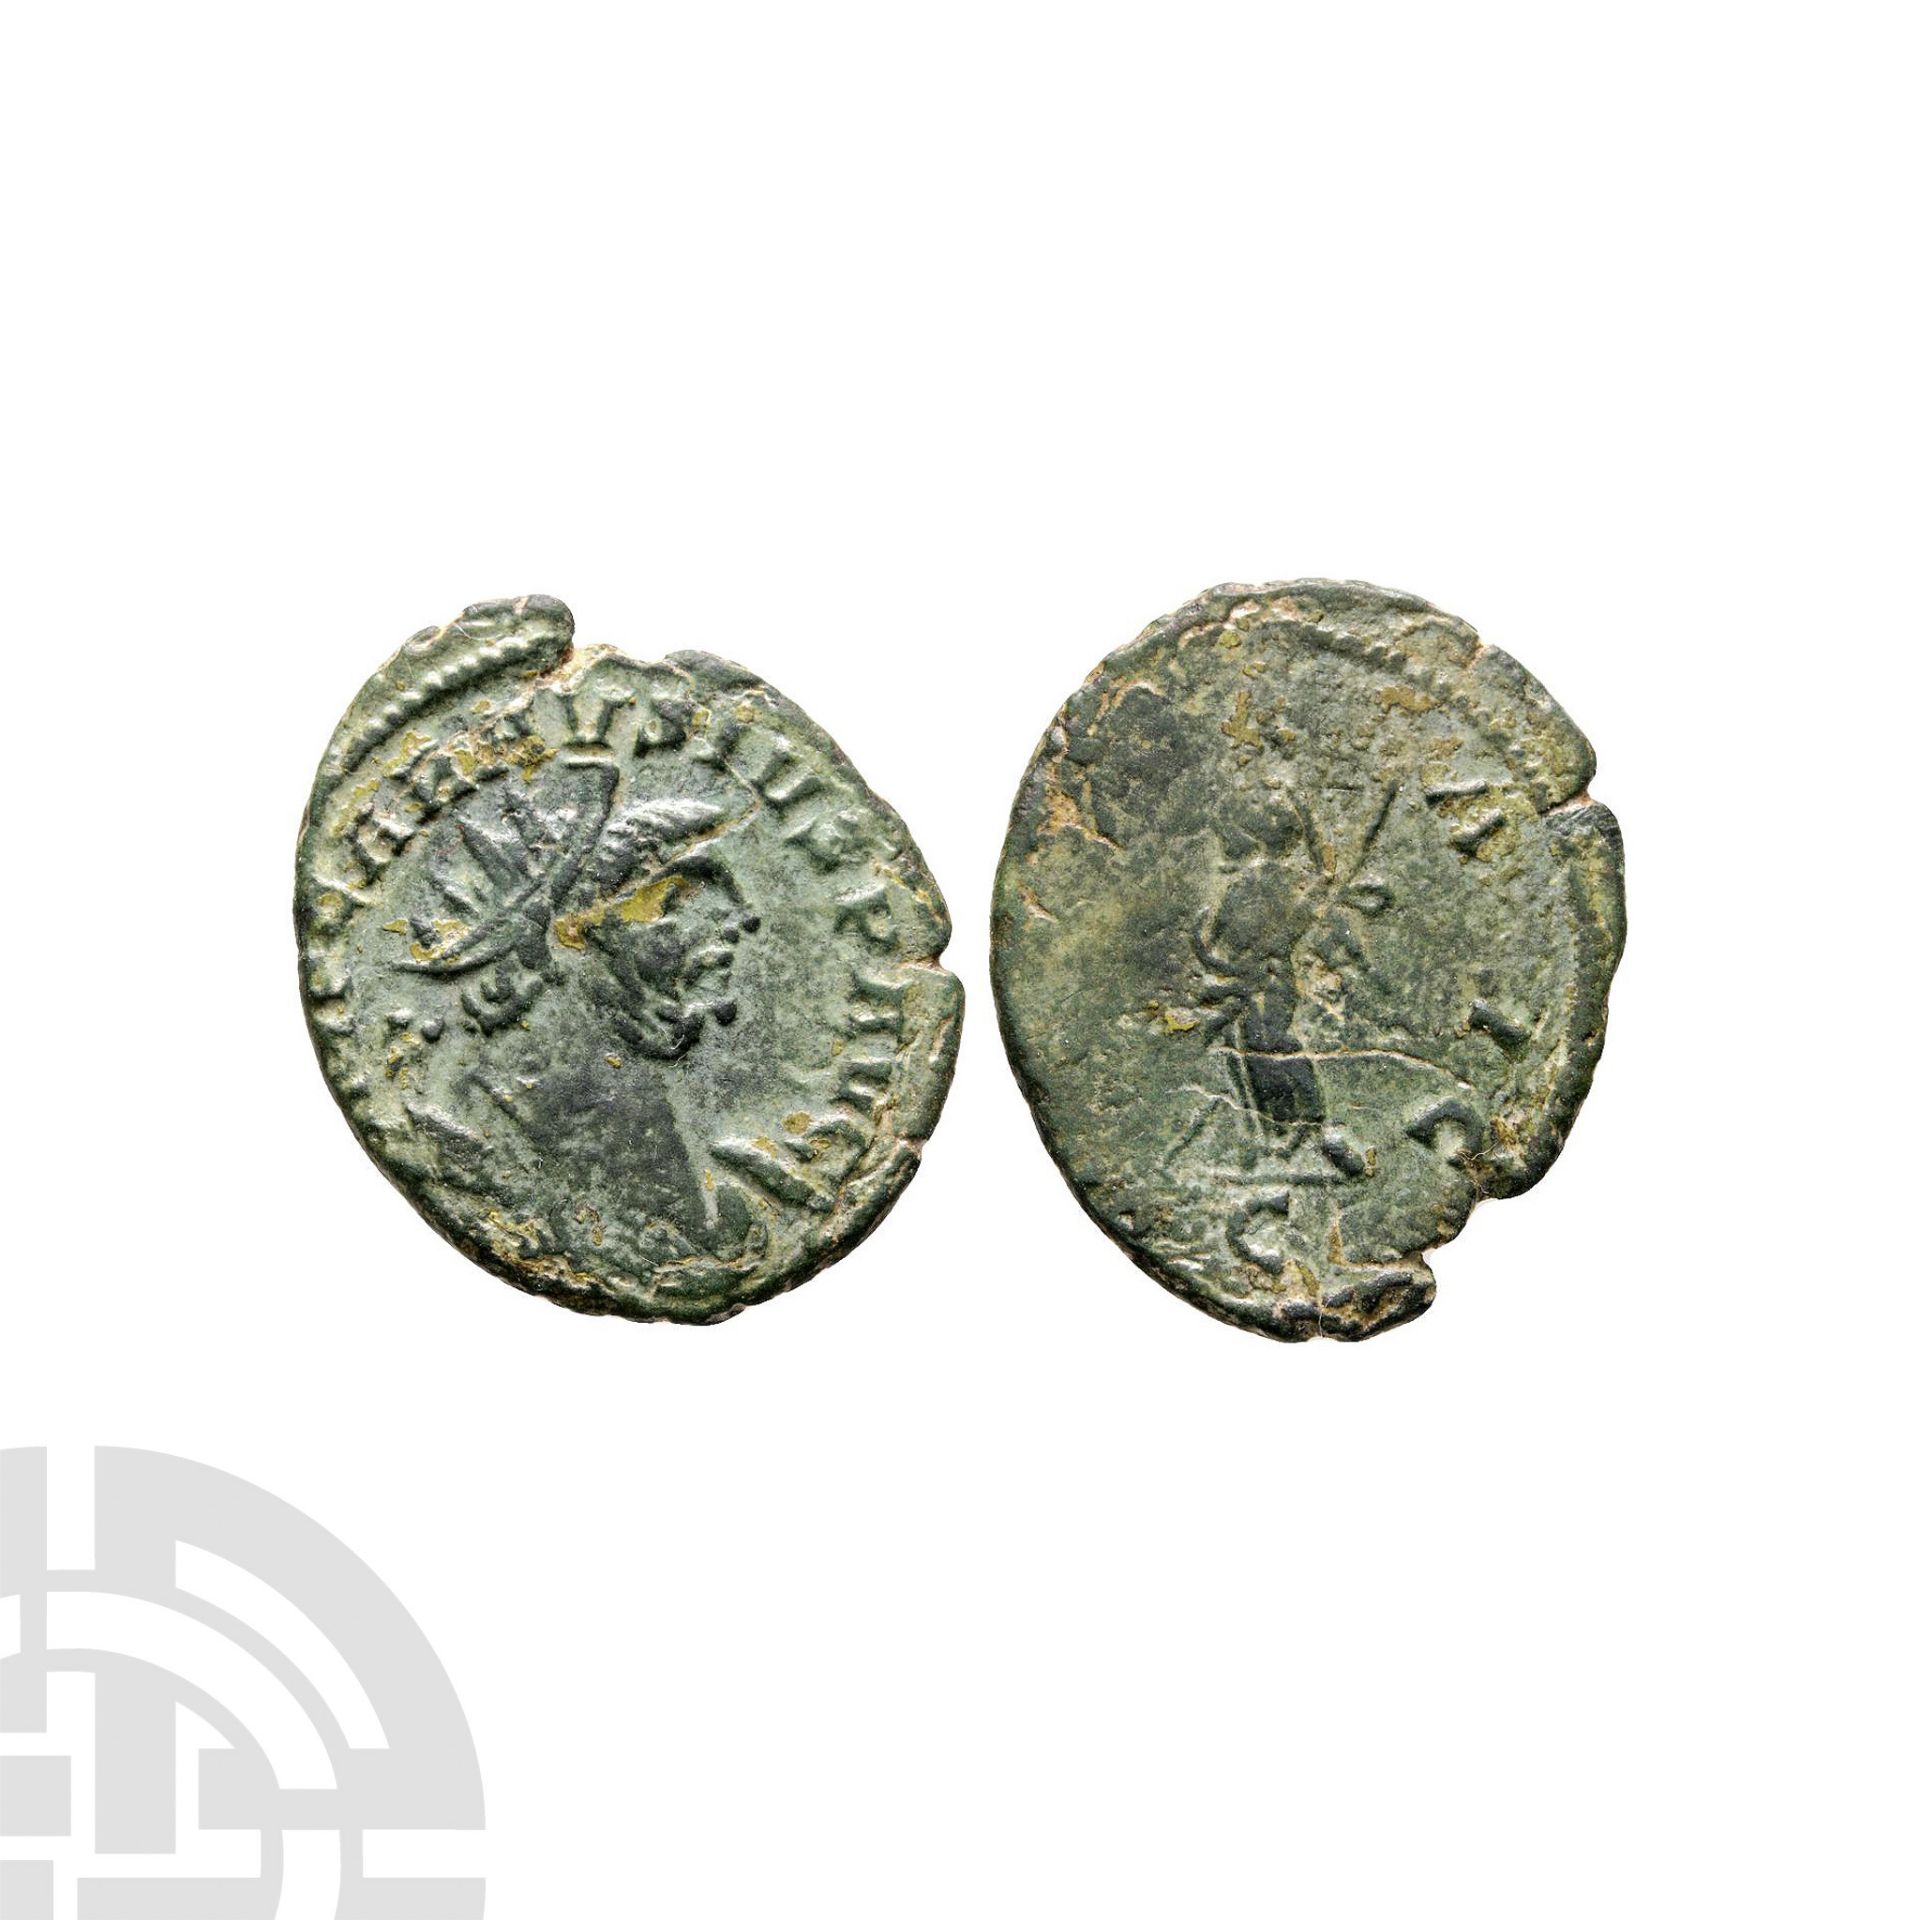 Ancient Roman Imperial Coins - Carausius - Camulodunum - AE Pax Antoninianus